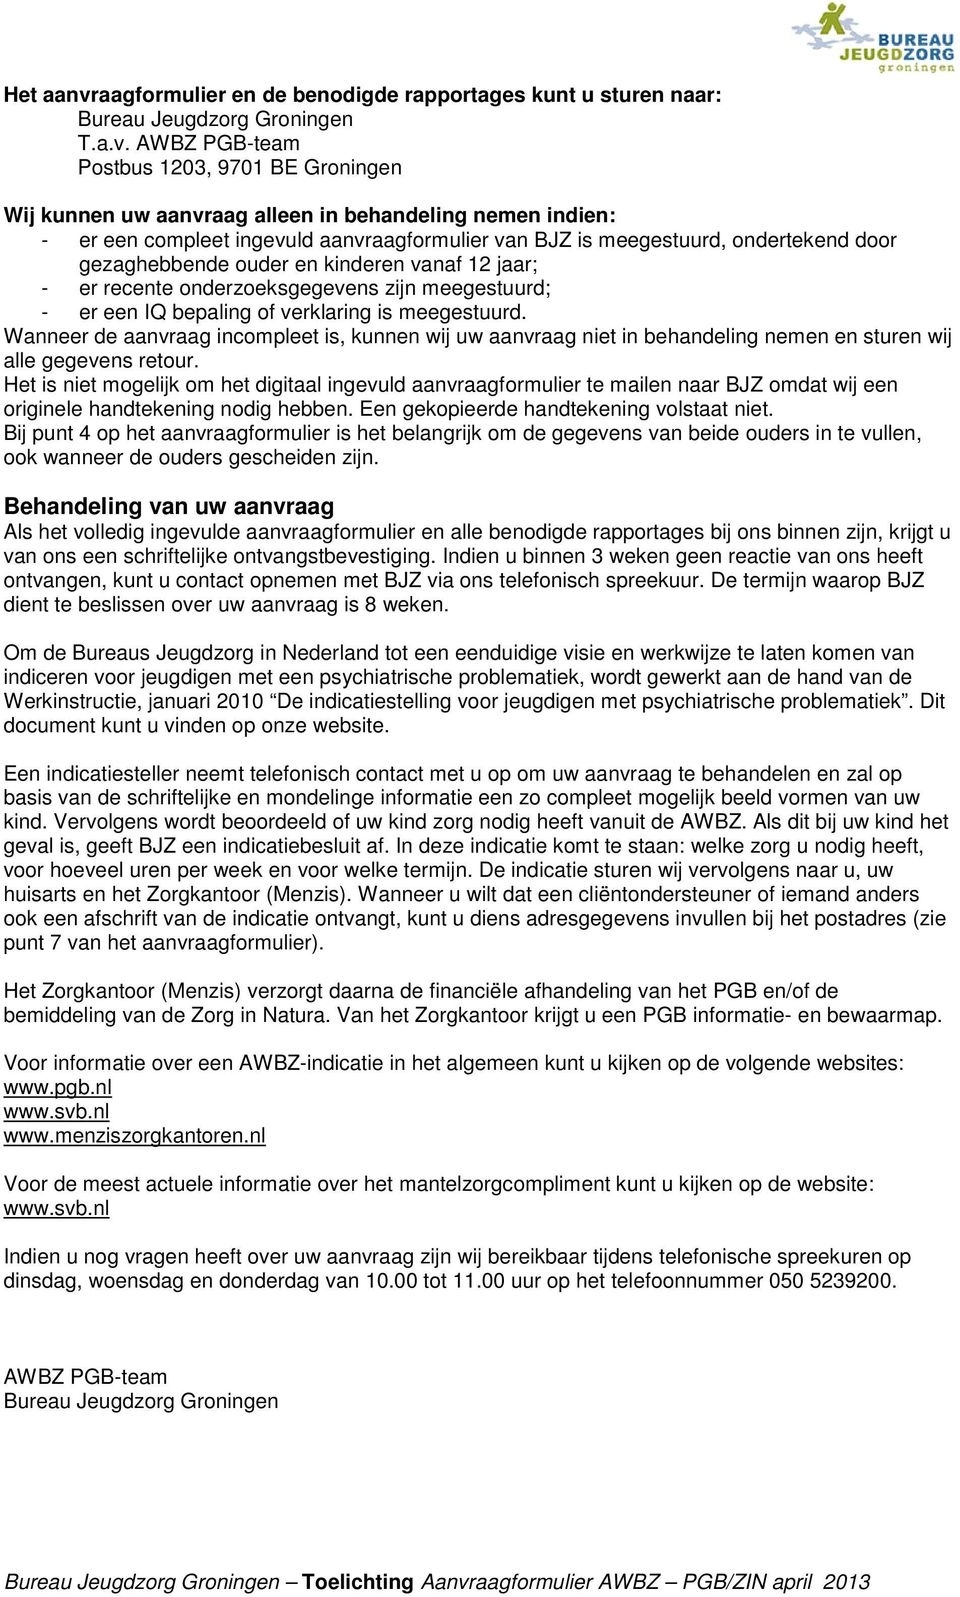 AWBZ PGB-team Postbus 1203, 9701 BE Groningen Wij kunnen uw aanvraag alleen in behandeling nemen indien: - er een compleet ingevuld aanvraagformulier van BJZ is meegestuurd, ondertekend door